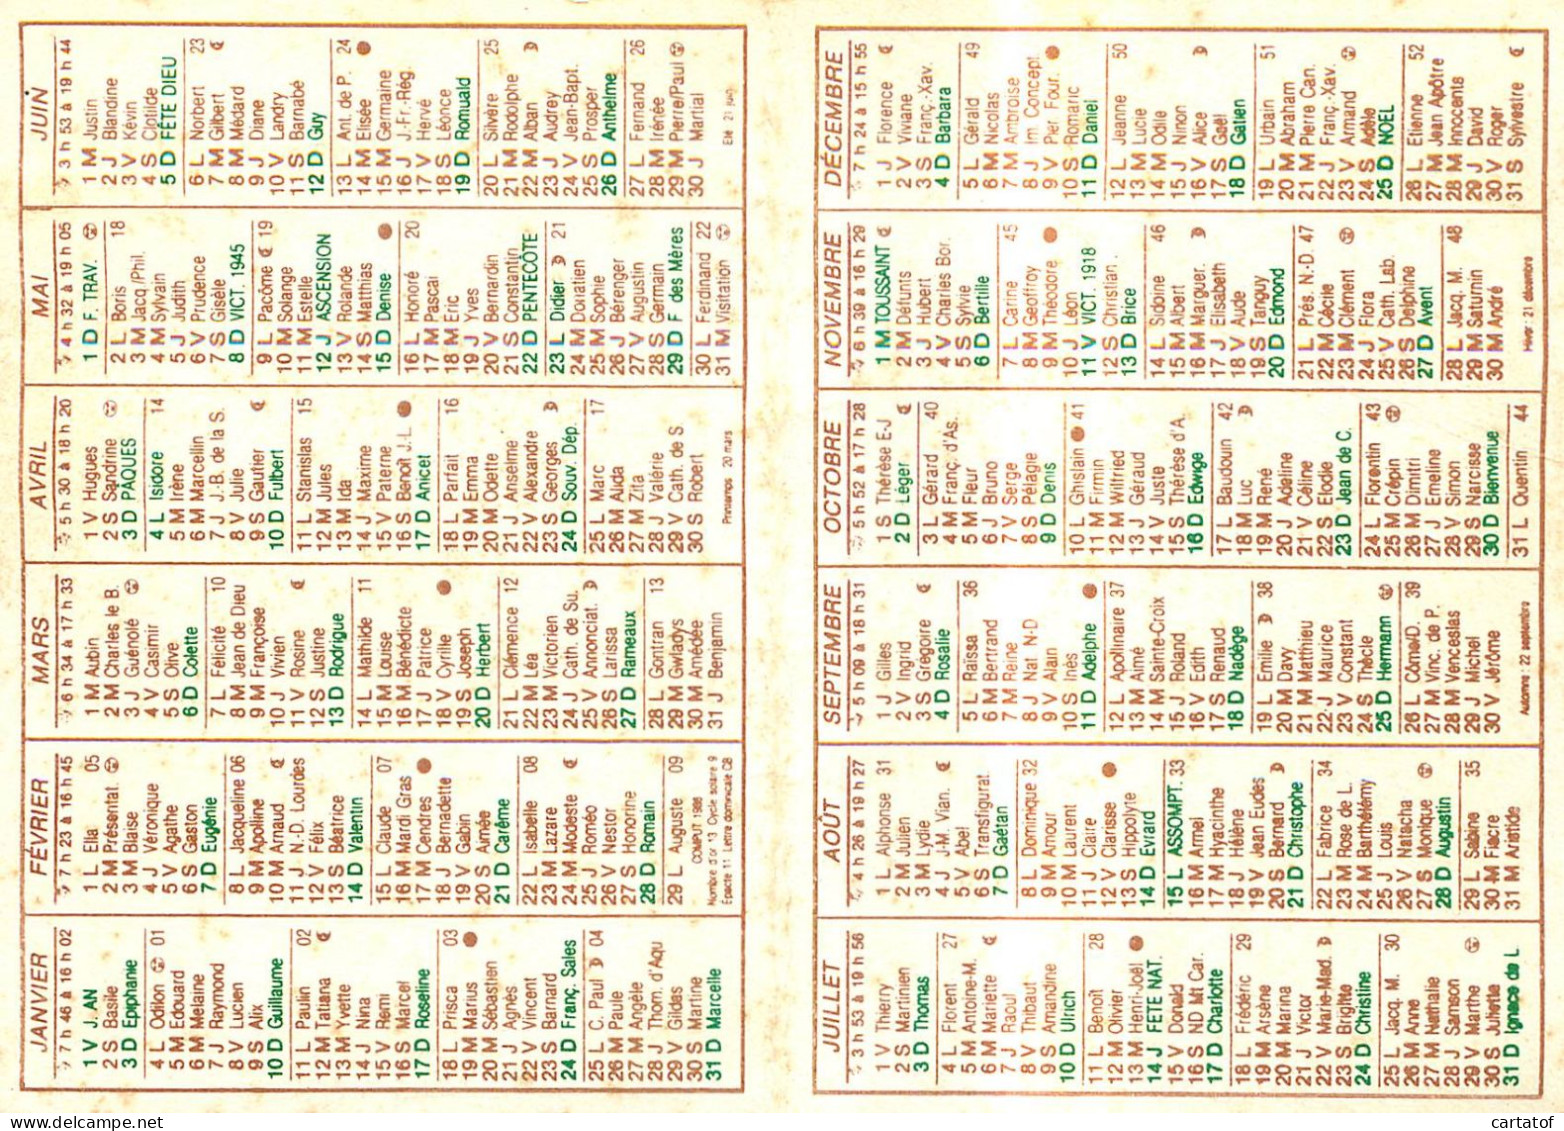 Calendrfier Publicitaire MINOTERIE DE SAINTE-CHRISTIE à MONTASTRUC . Tampon Boulangerie LORENZI St-Girons - Grand Format : 1981-90